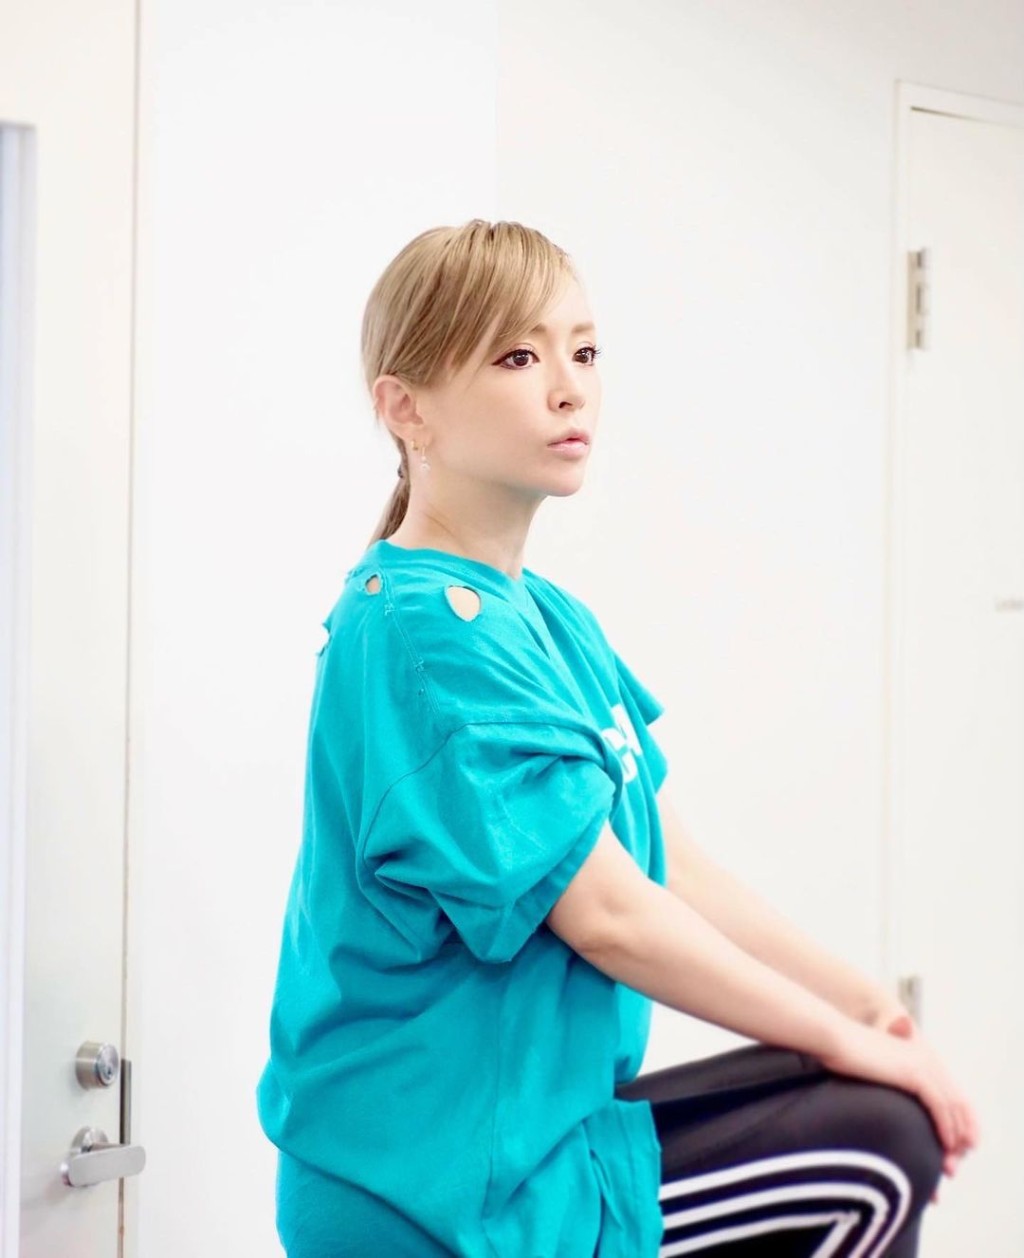 日本天后濱崎步幾年前被爆戀上細她20歲的小鮮肉舞蹈員荒木駿平。